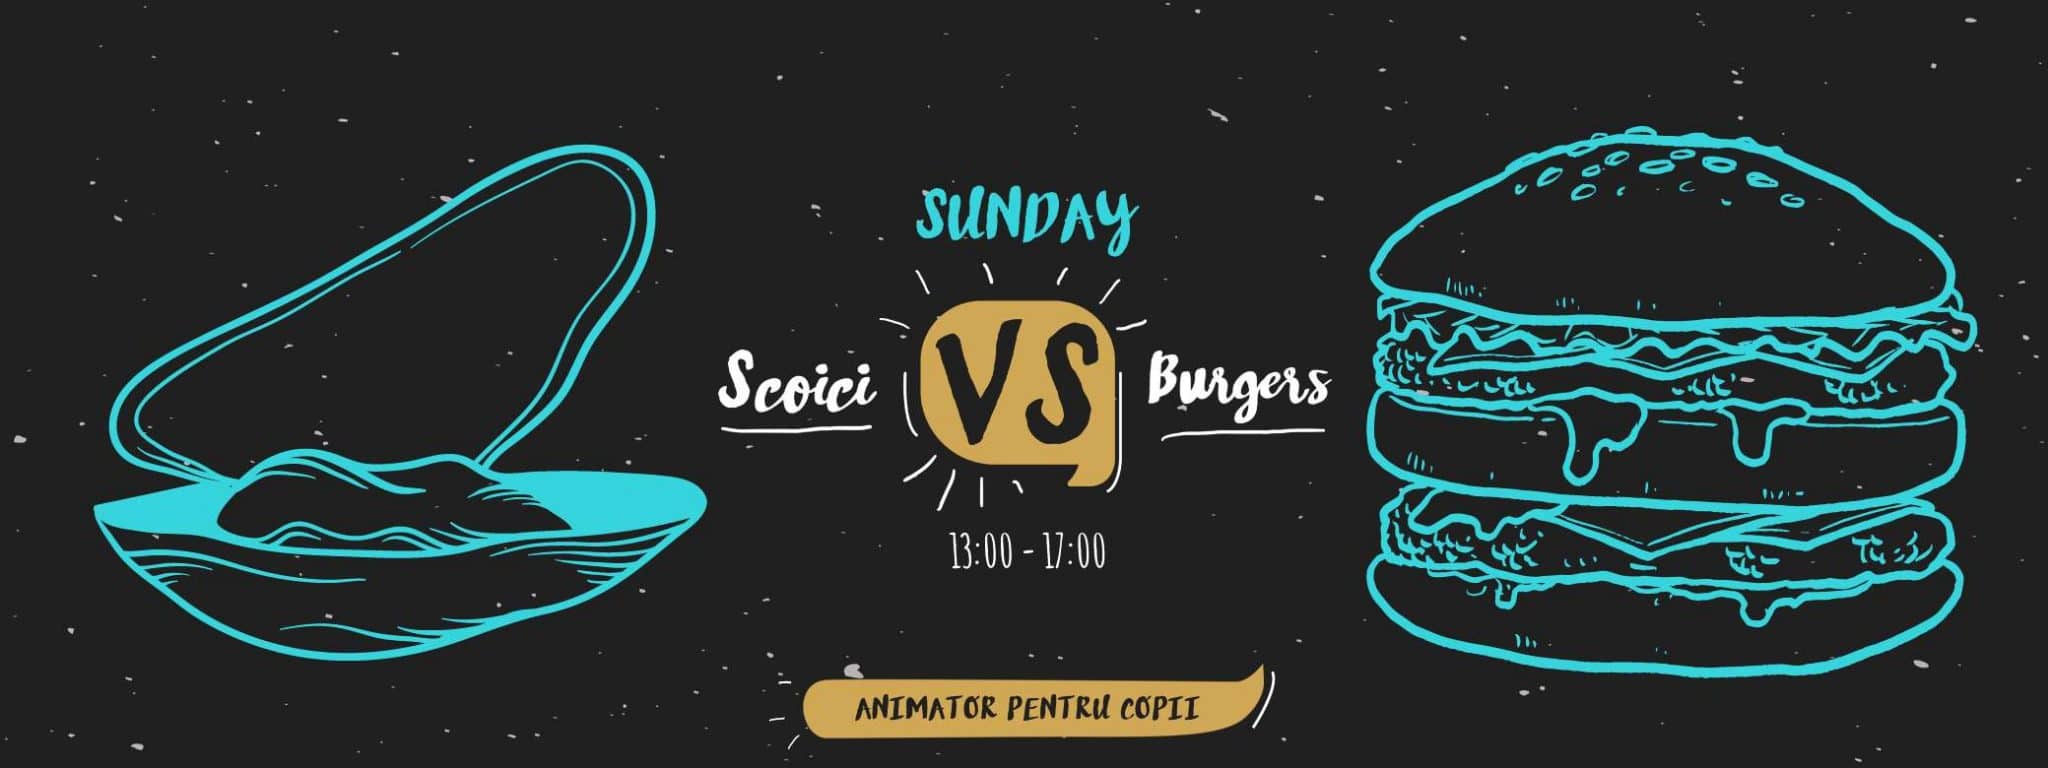 Duminica – zi de relaxare si rasfat la Sunday Scoici vs Burgers!